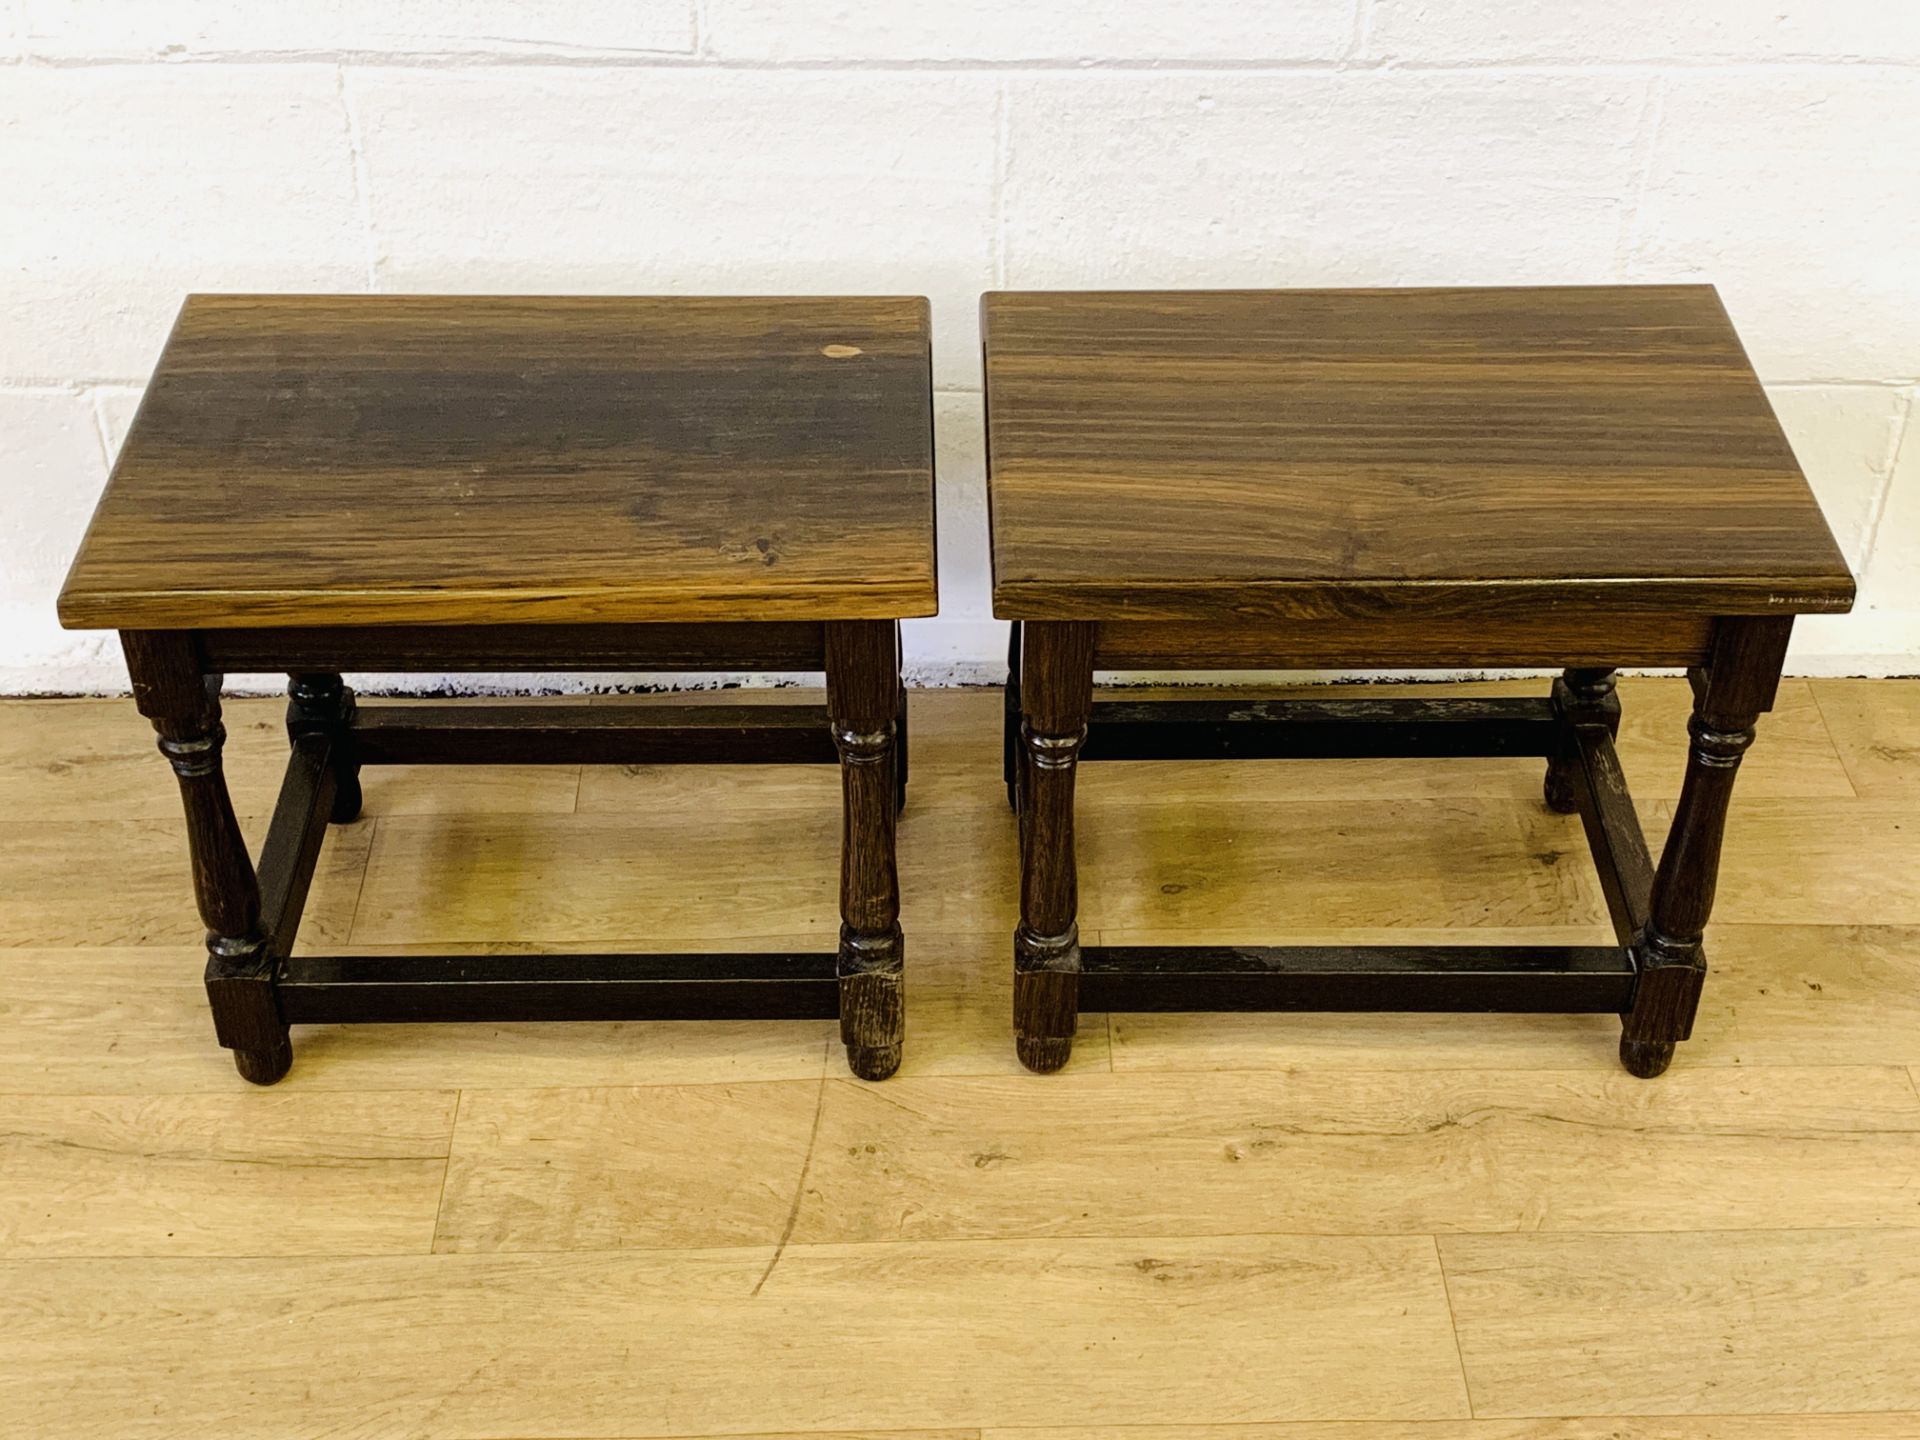 Two bog oak side tables